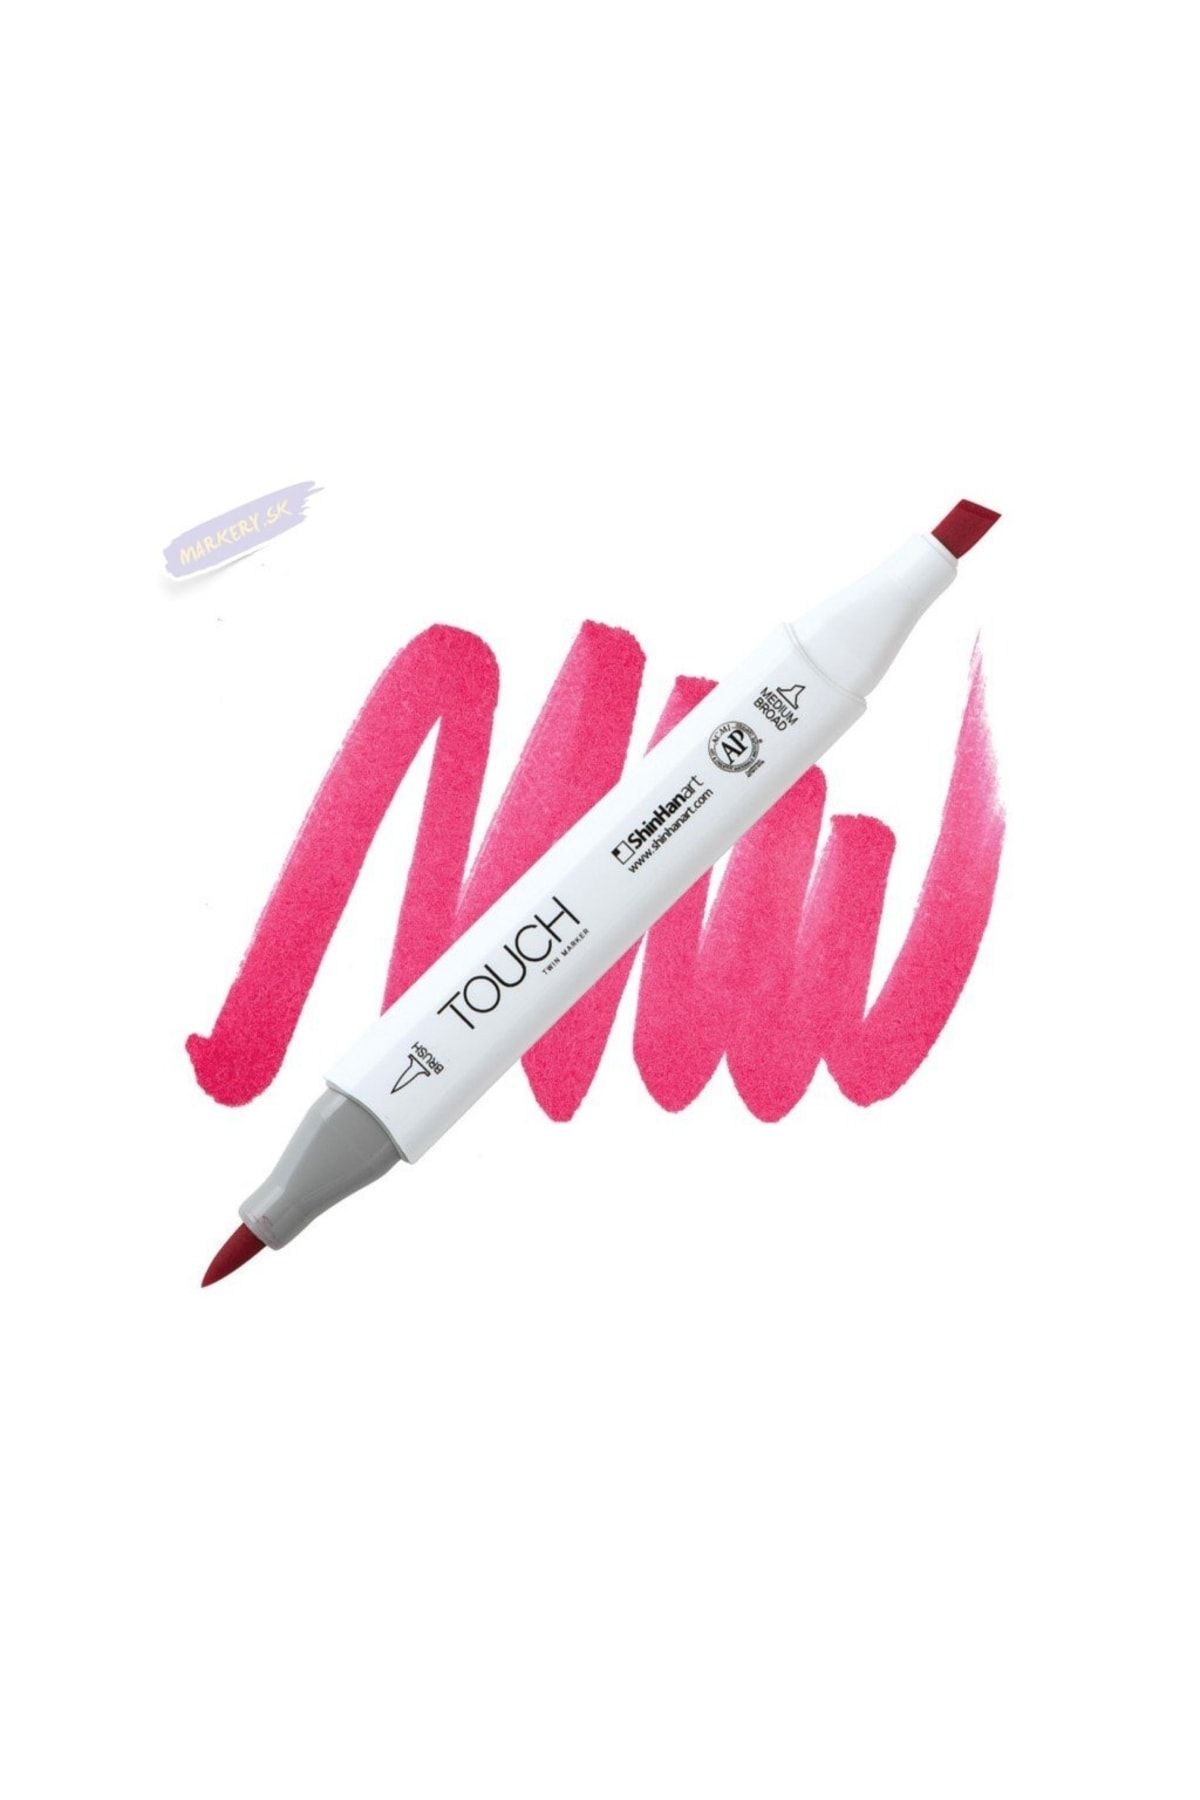 Shinhan Art Touch Twın Brush Pen : Çift Taraflı Marker : Cp5 Cherry Pink